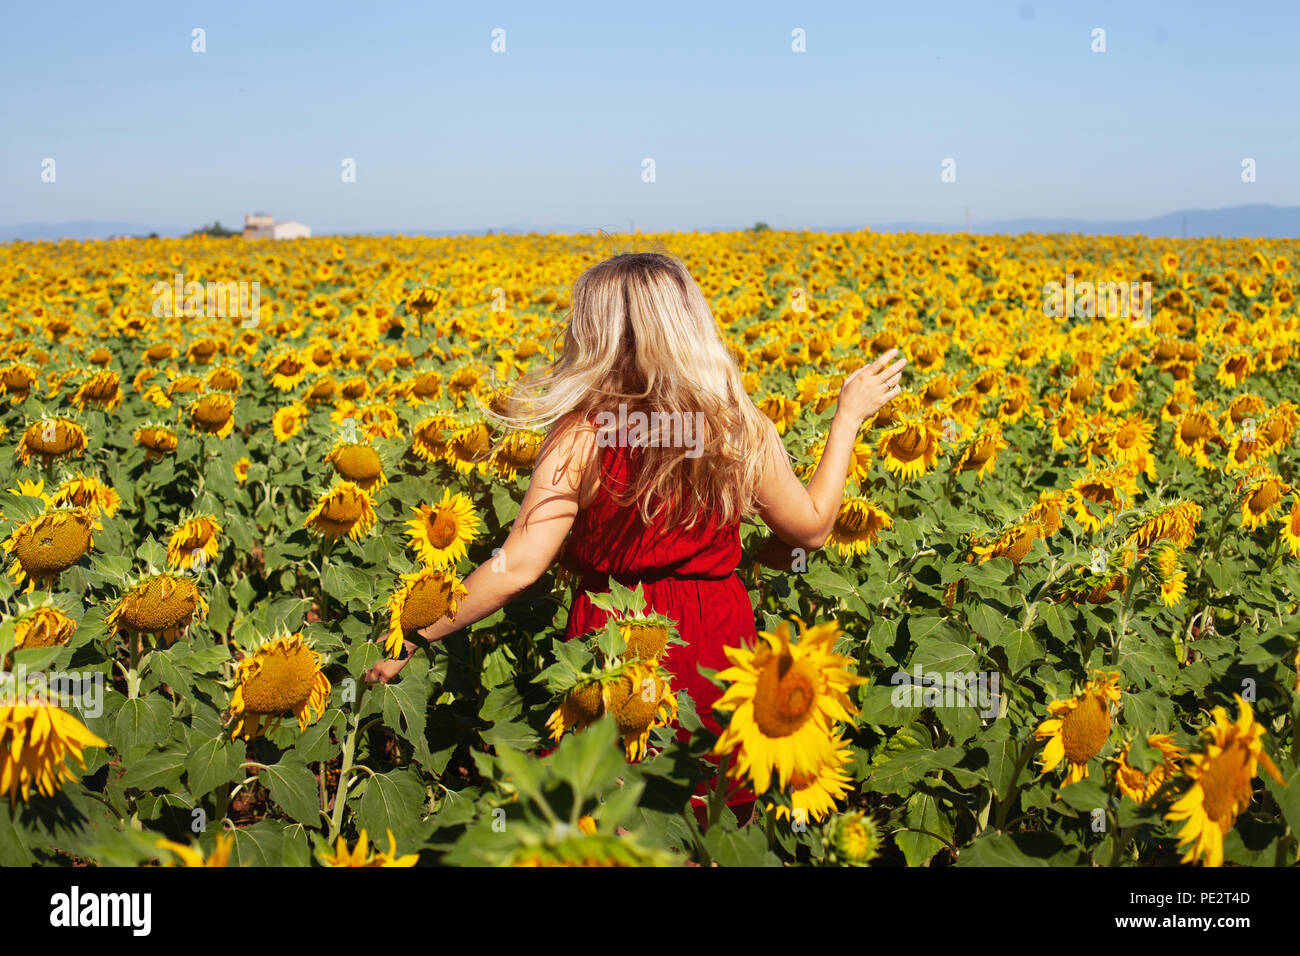 Mujer feliz en verano, campo de girasol disfrutando de la vida, belleza natural Foto de stock